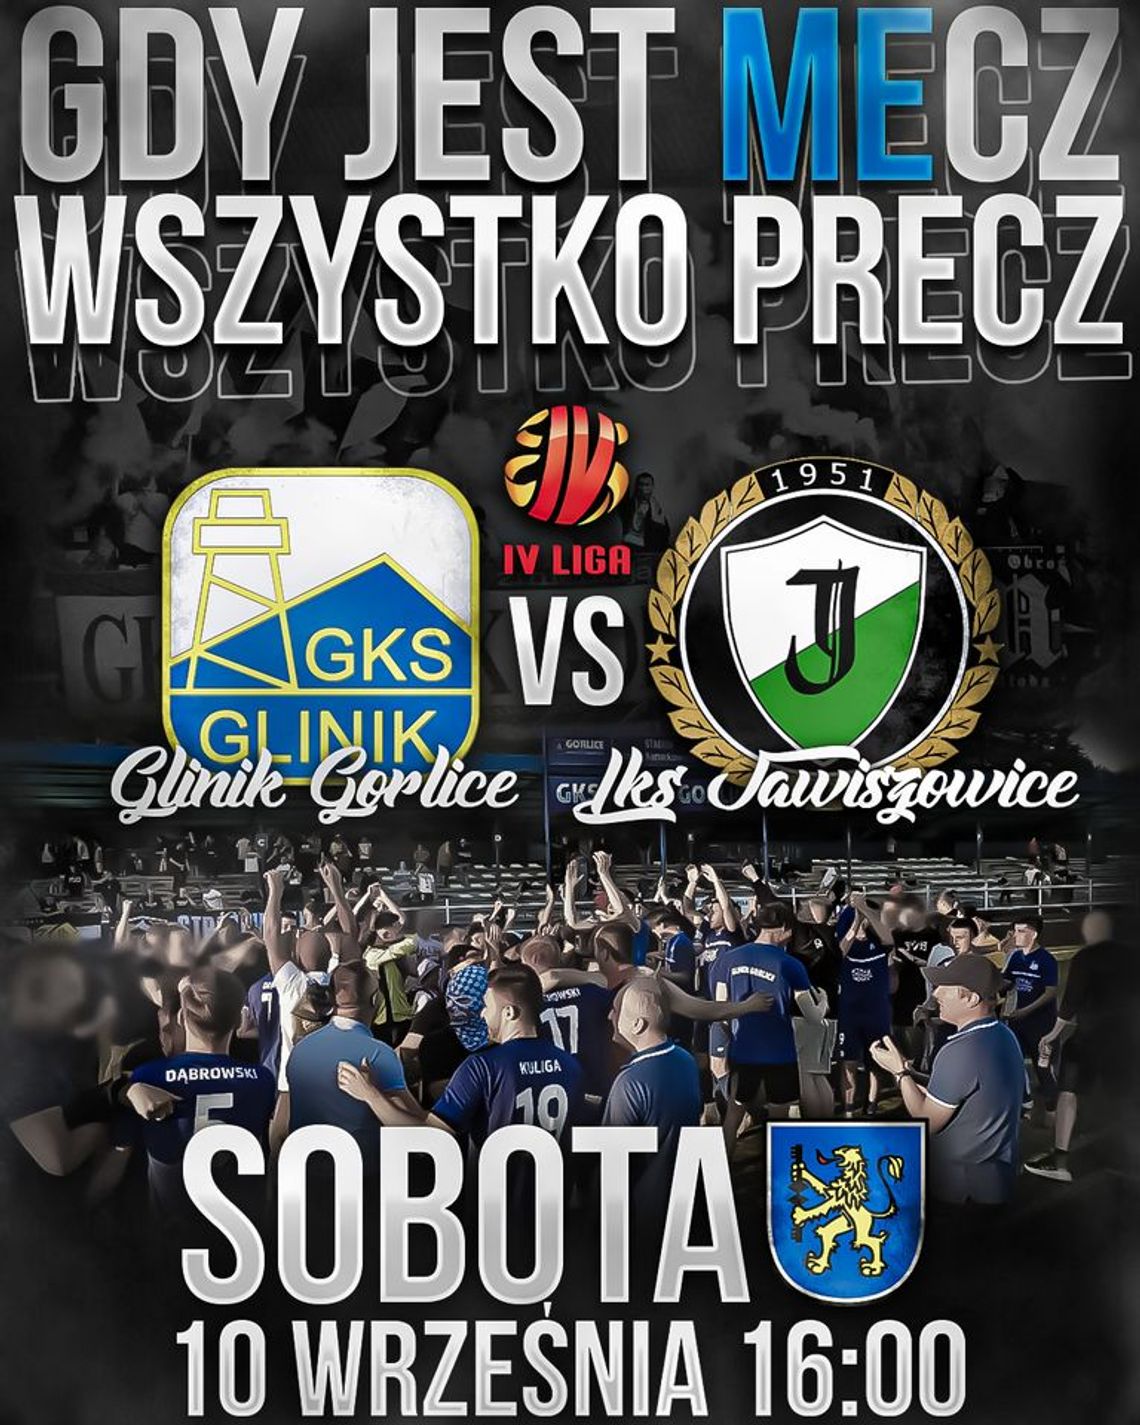 GKS Glinik Gorlice - LKS Jawiszowice. IV liga piłki nożnej | halogorlice.info